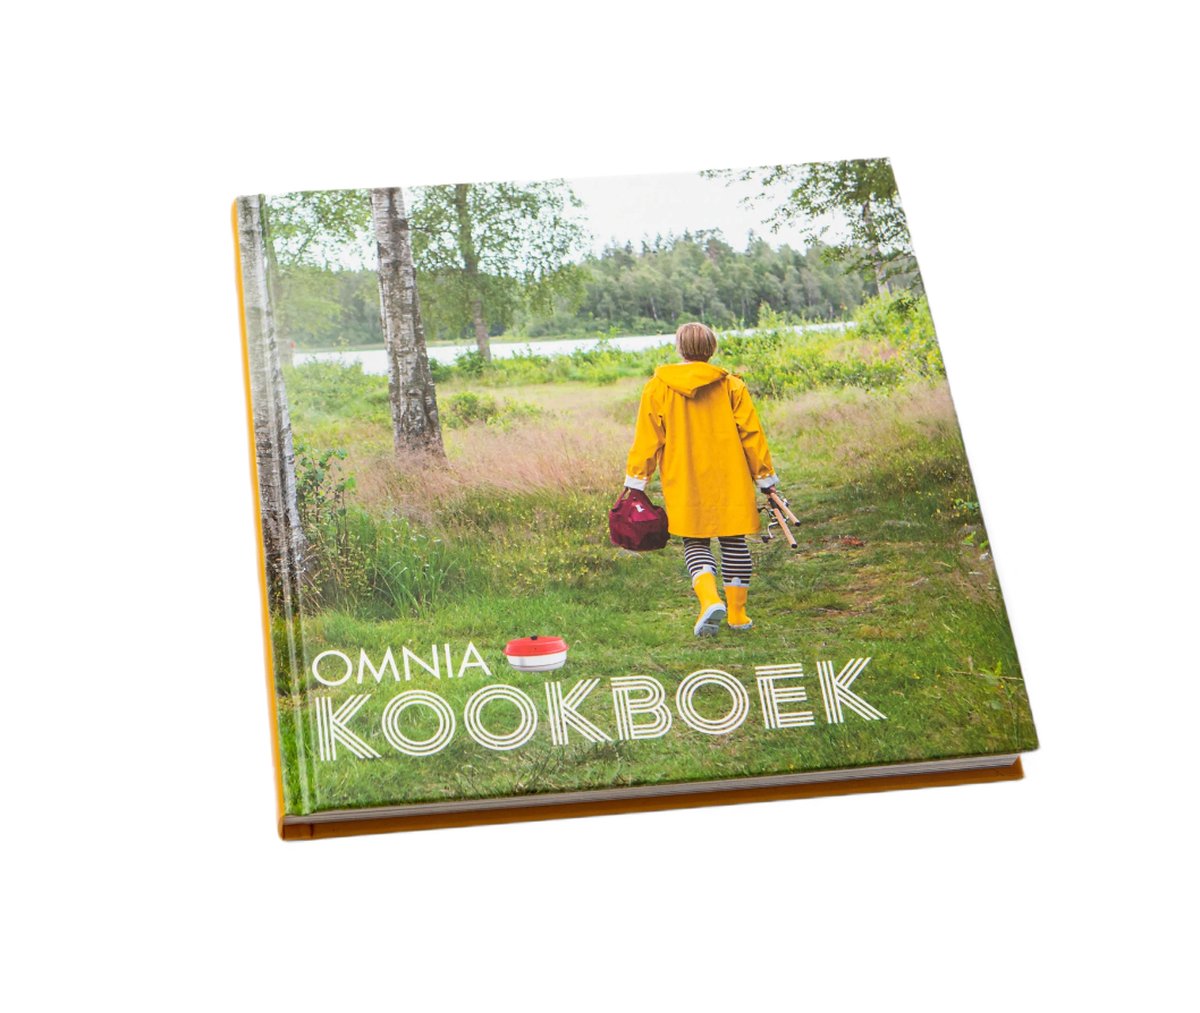 Omnia kookboek Nederlands - 